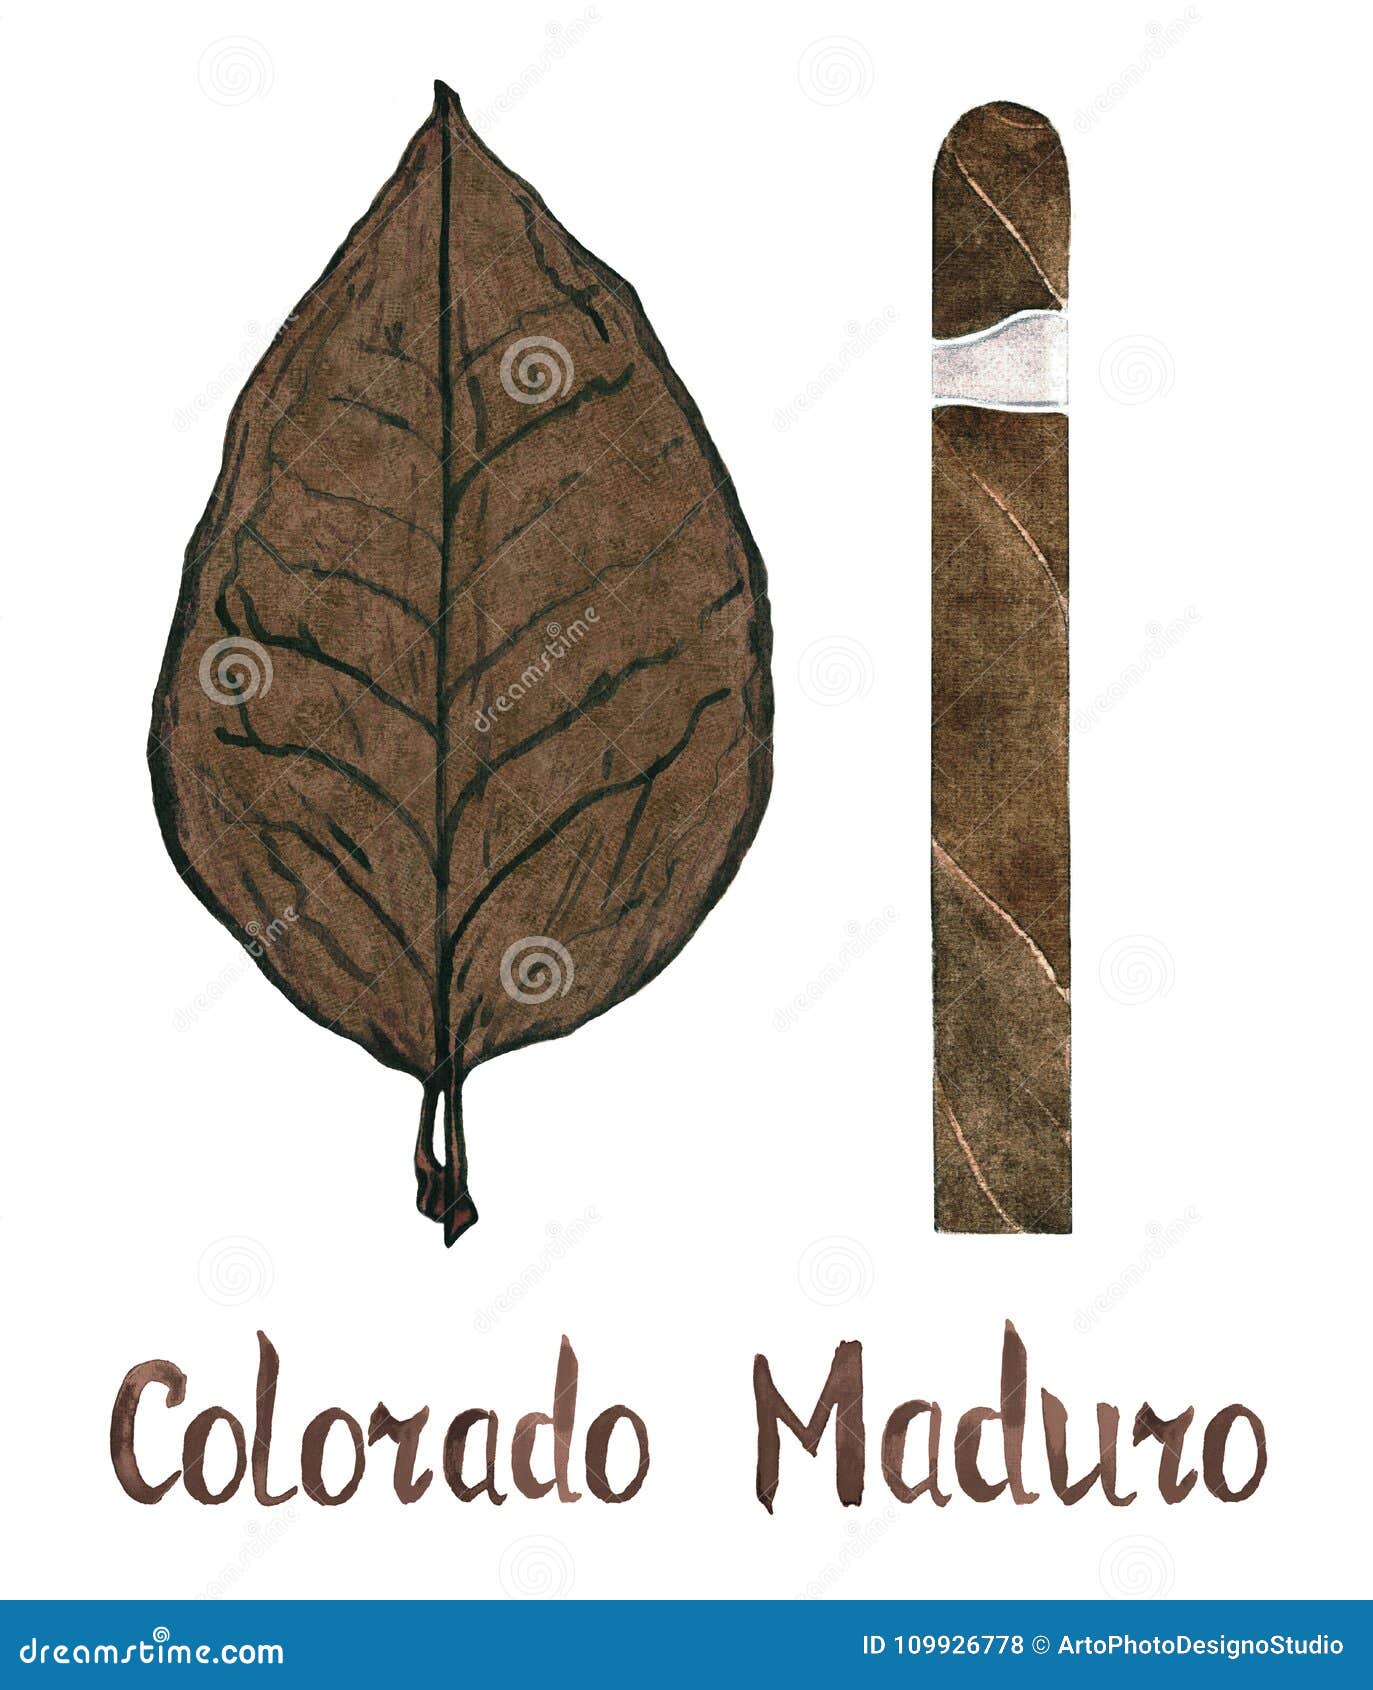 cigar colorado maduro wrapper leaf color type